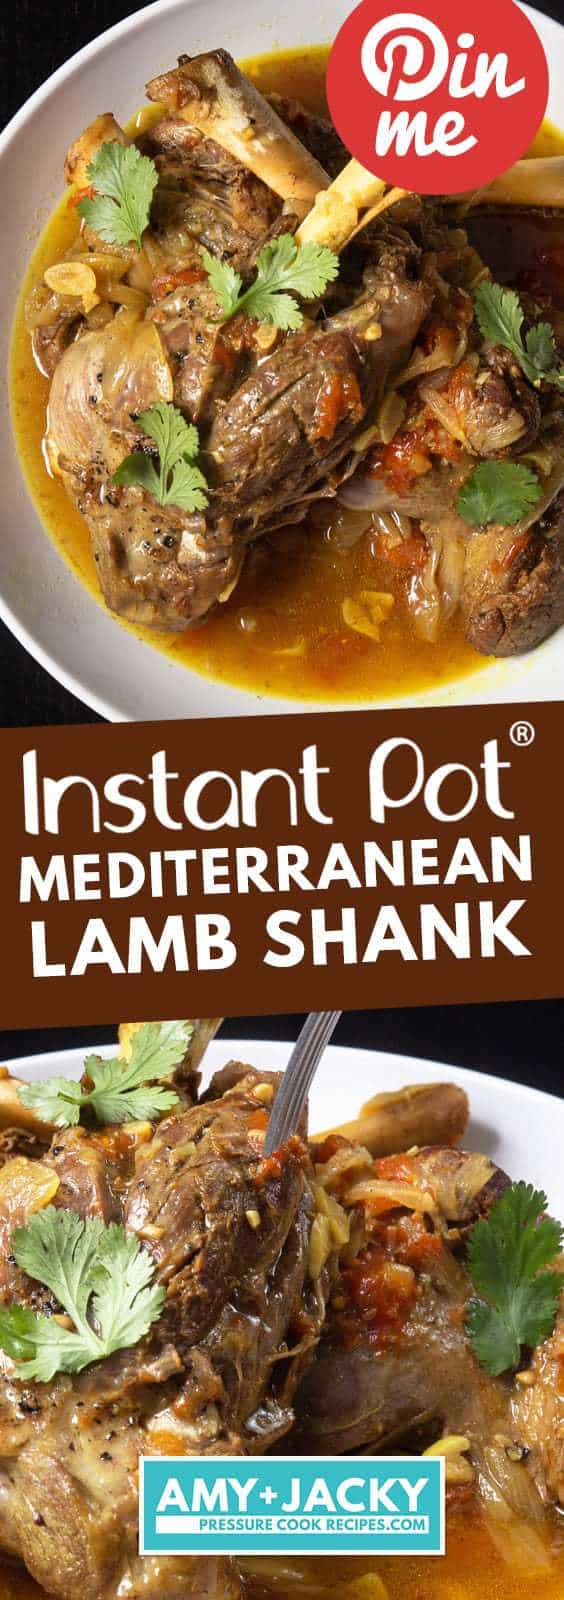 Instant Pot Lamb Shank | Pressure Cooker Lamb Shanks | How to cook lamb shanks | Lamb Shank Recipe | Instant Pot Lamb Recipes | Instant Pot Mediterranean Recipes | Healthy Instant Pot Recipes #recipes #instantpot #lamb #easy #healthy